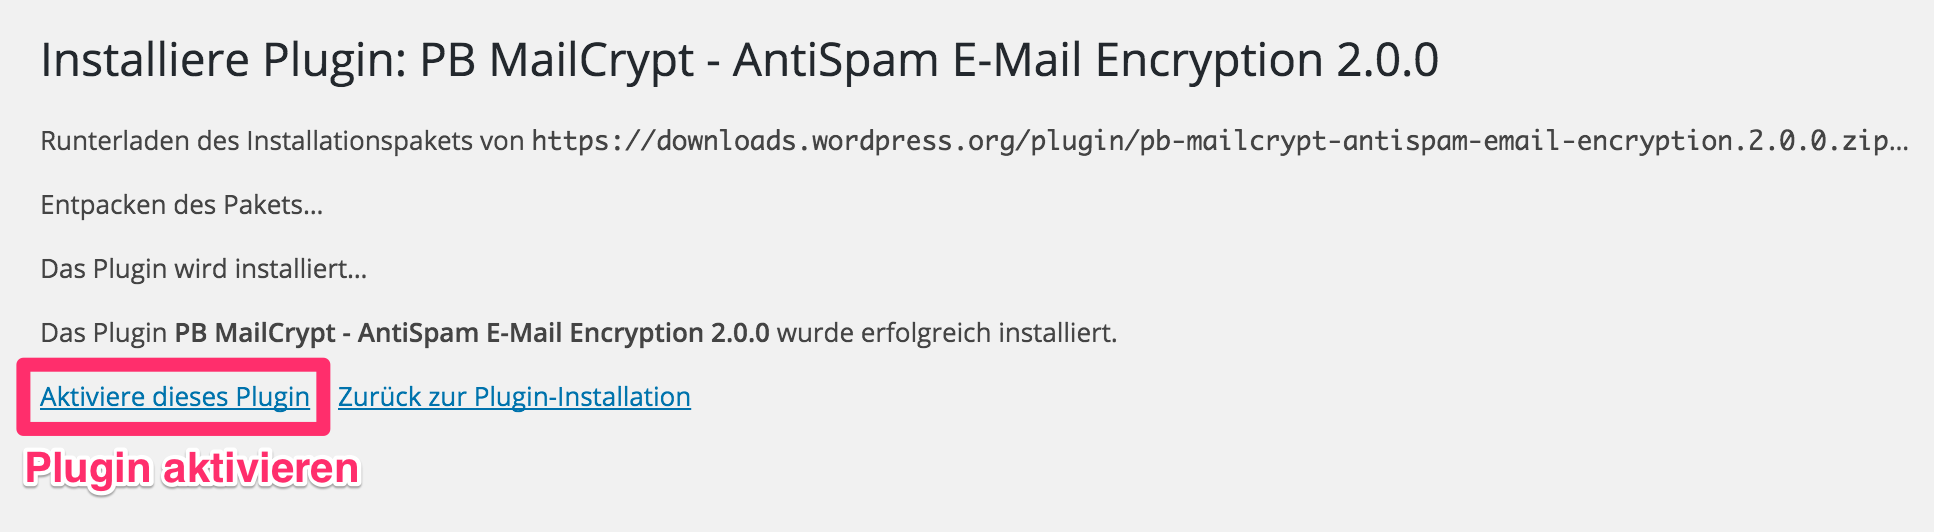 MailCrypt aktivieren